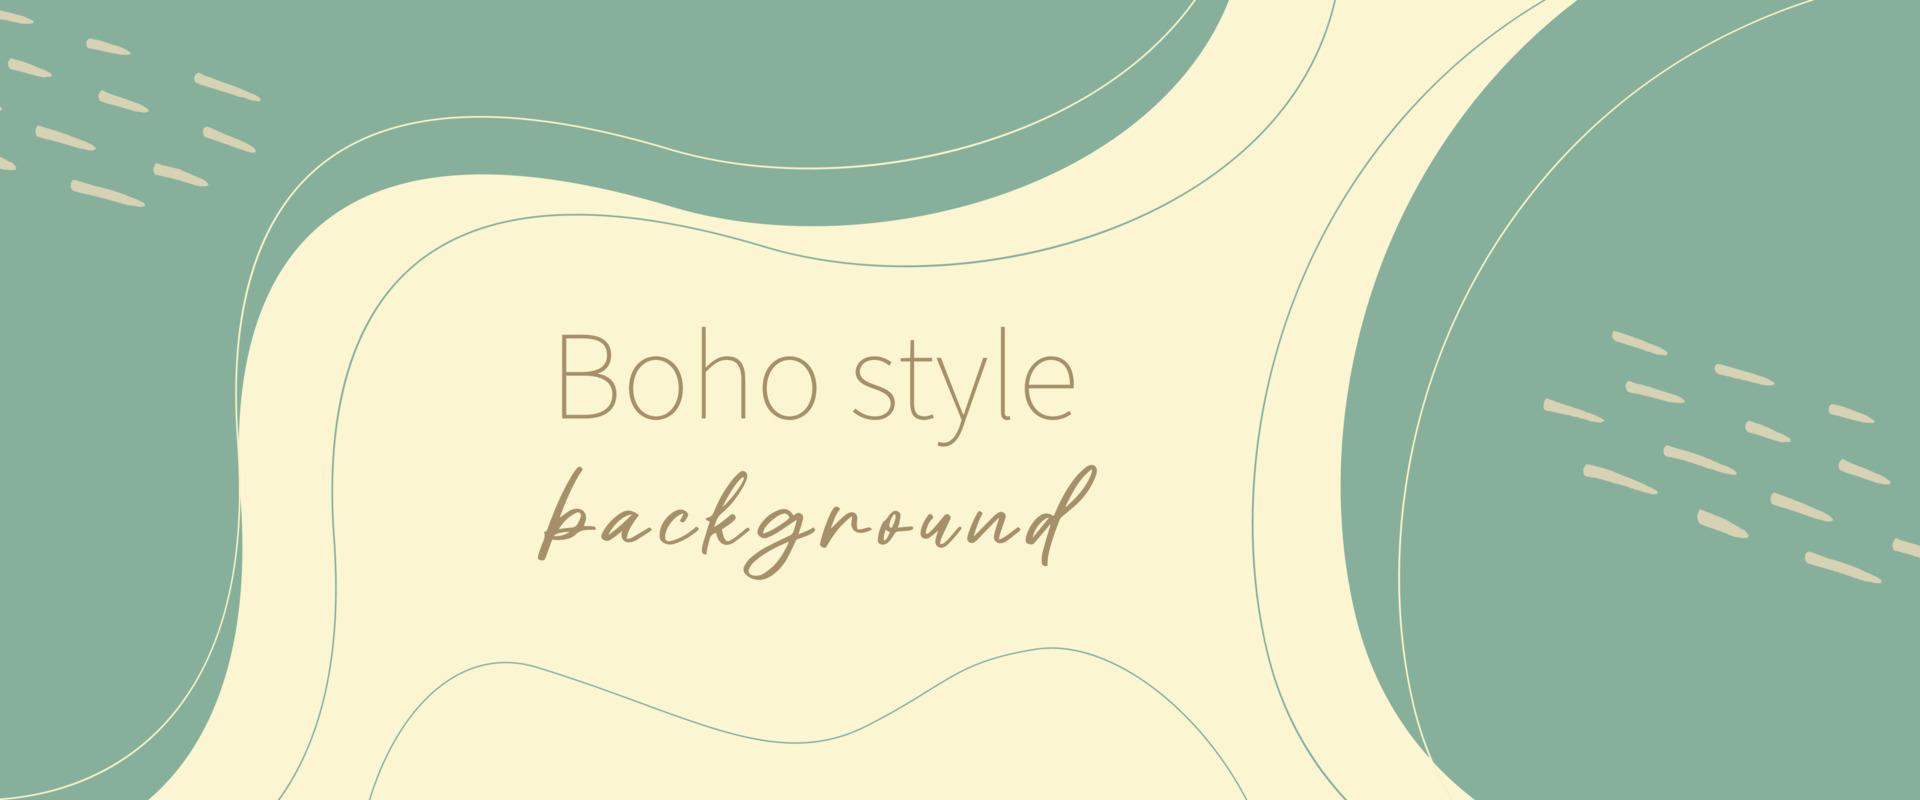 abstrakter Hintergrund im Boho-Stil mit Linien und organischen Formen. Schablone. vektor